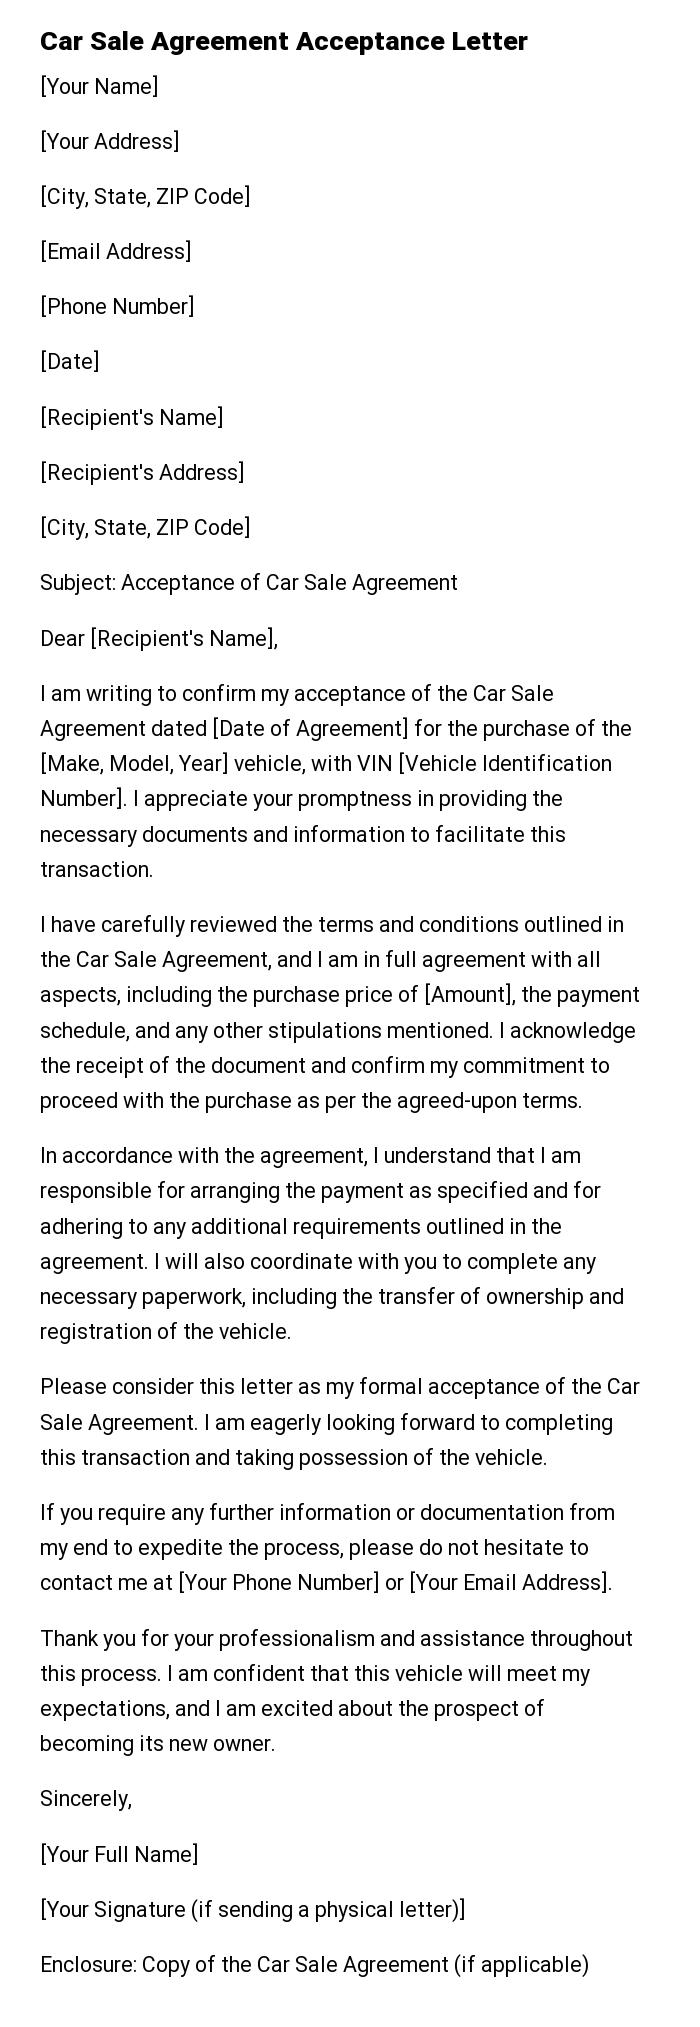 Car Sale Agreement Acceptance Letter